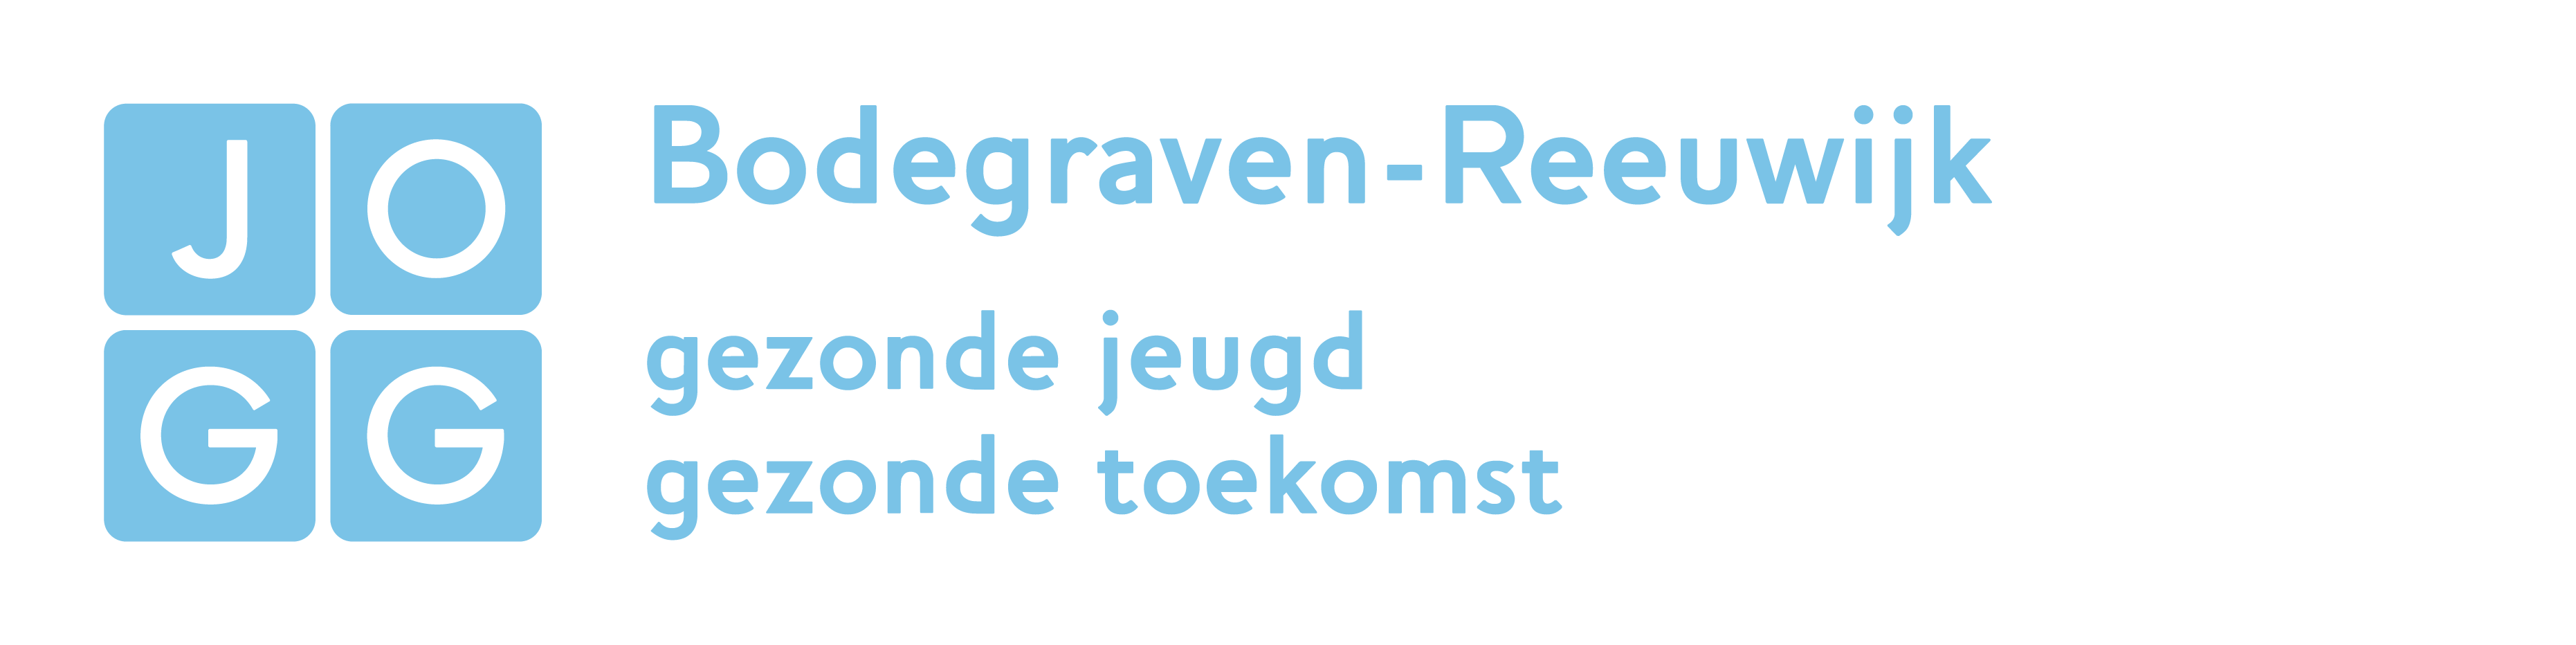 JOGG-Bodegraven-Reeuwijk.png